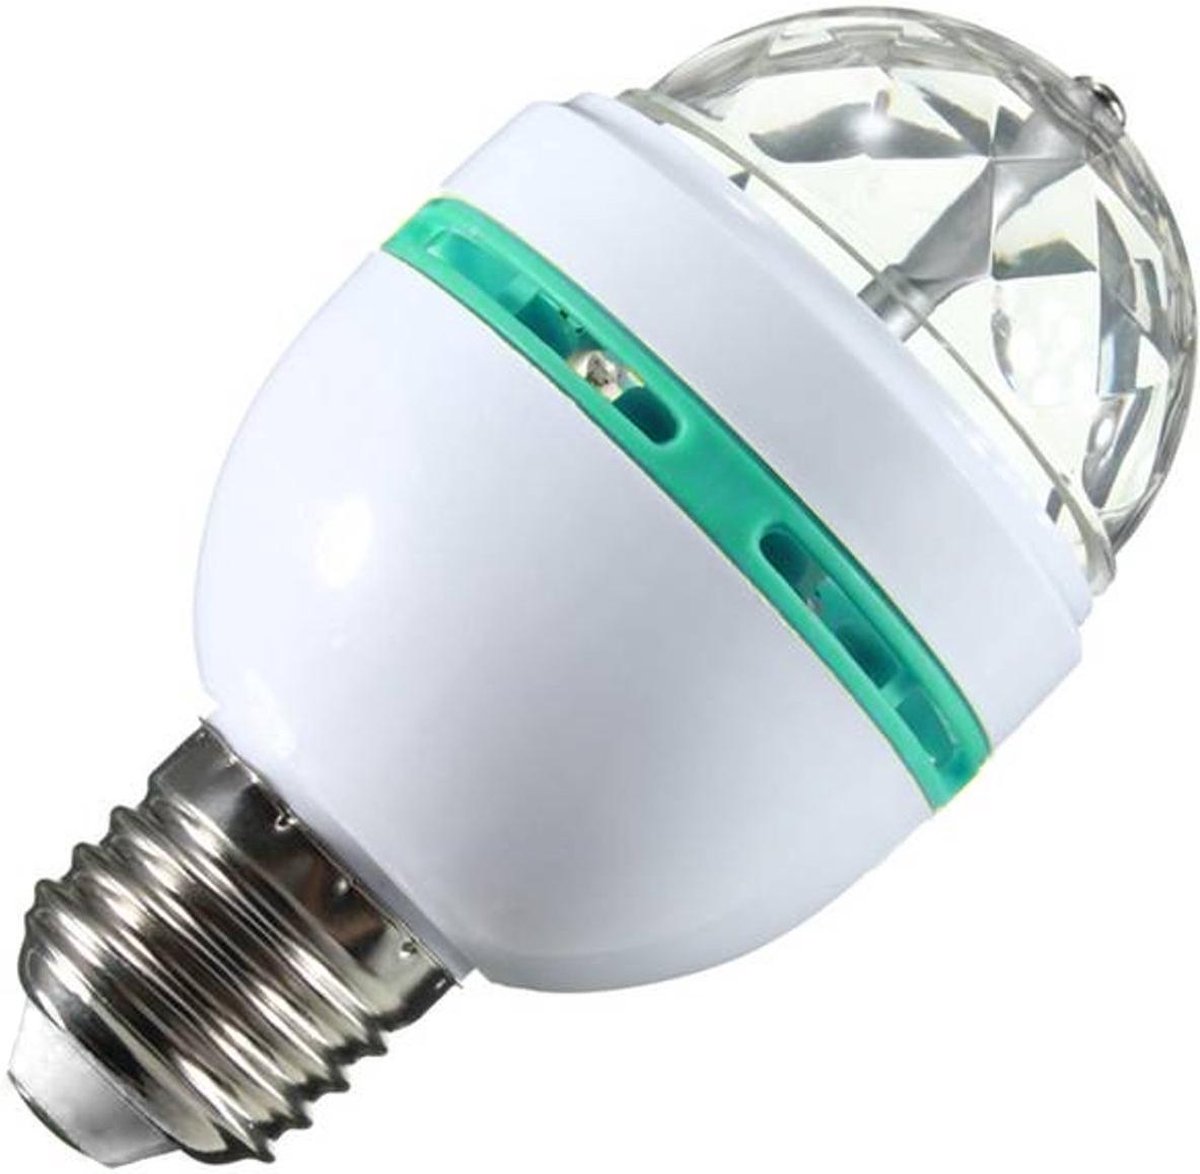 Disco lamp/licht - E27 fitting - roterend - 30 kleureffecten | bol.com